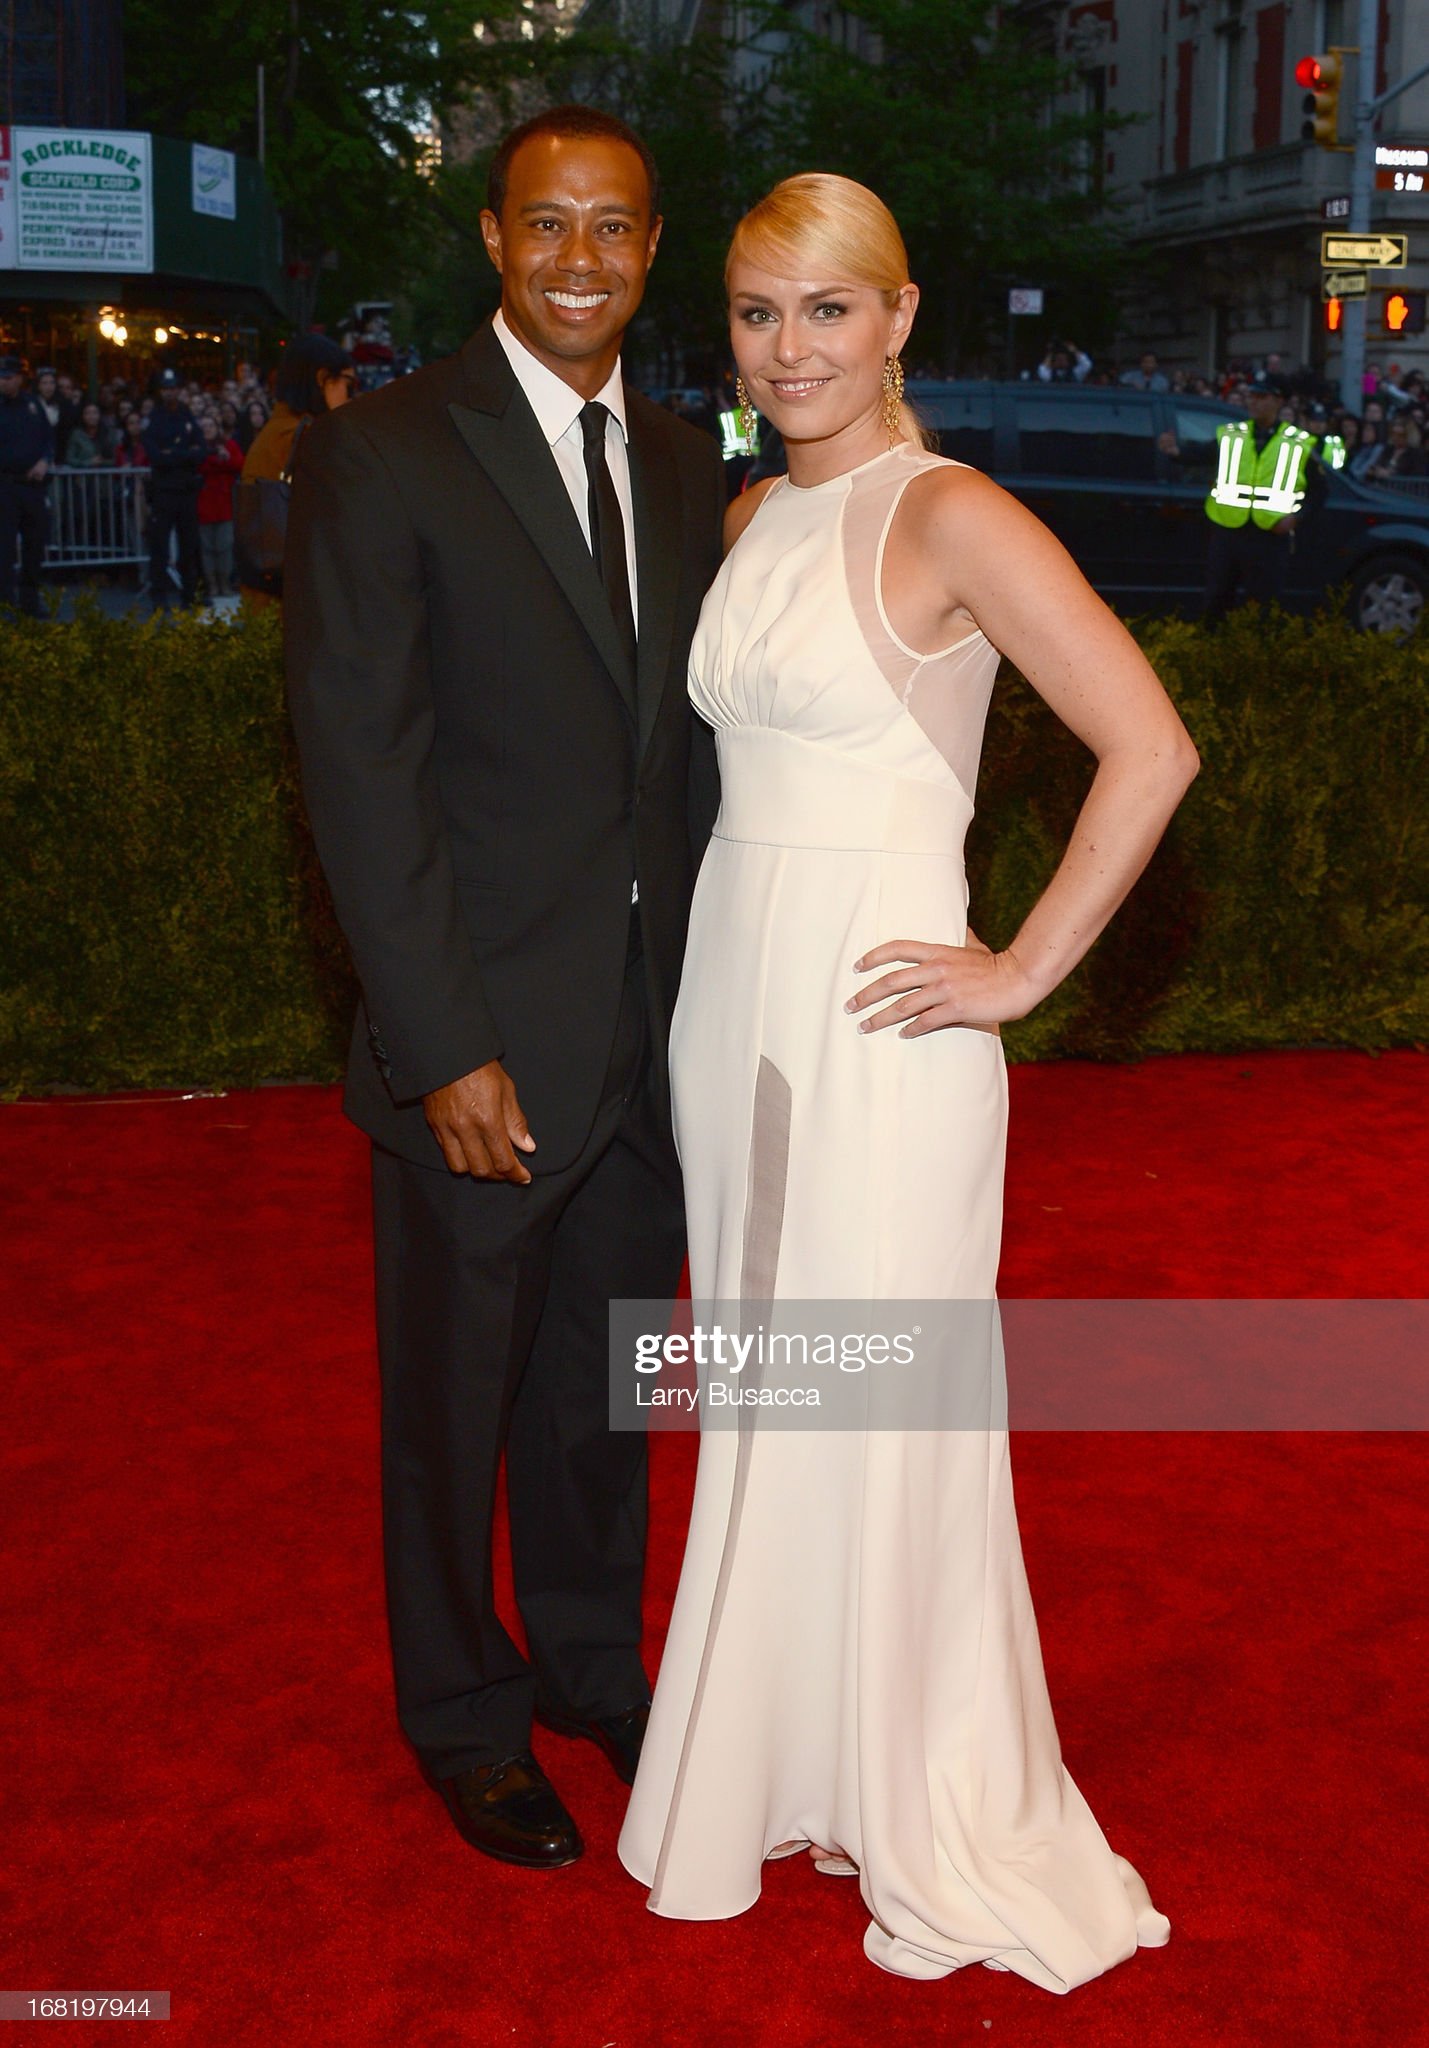 Tiger Woods and Lindsay Vonn, 2013